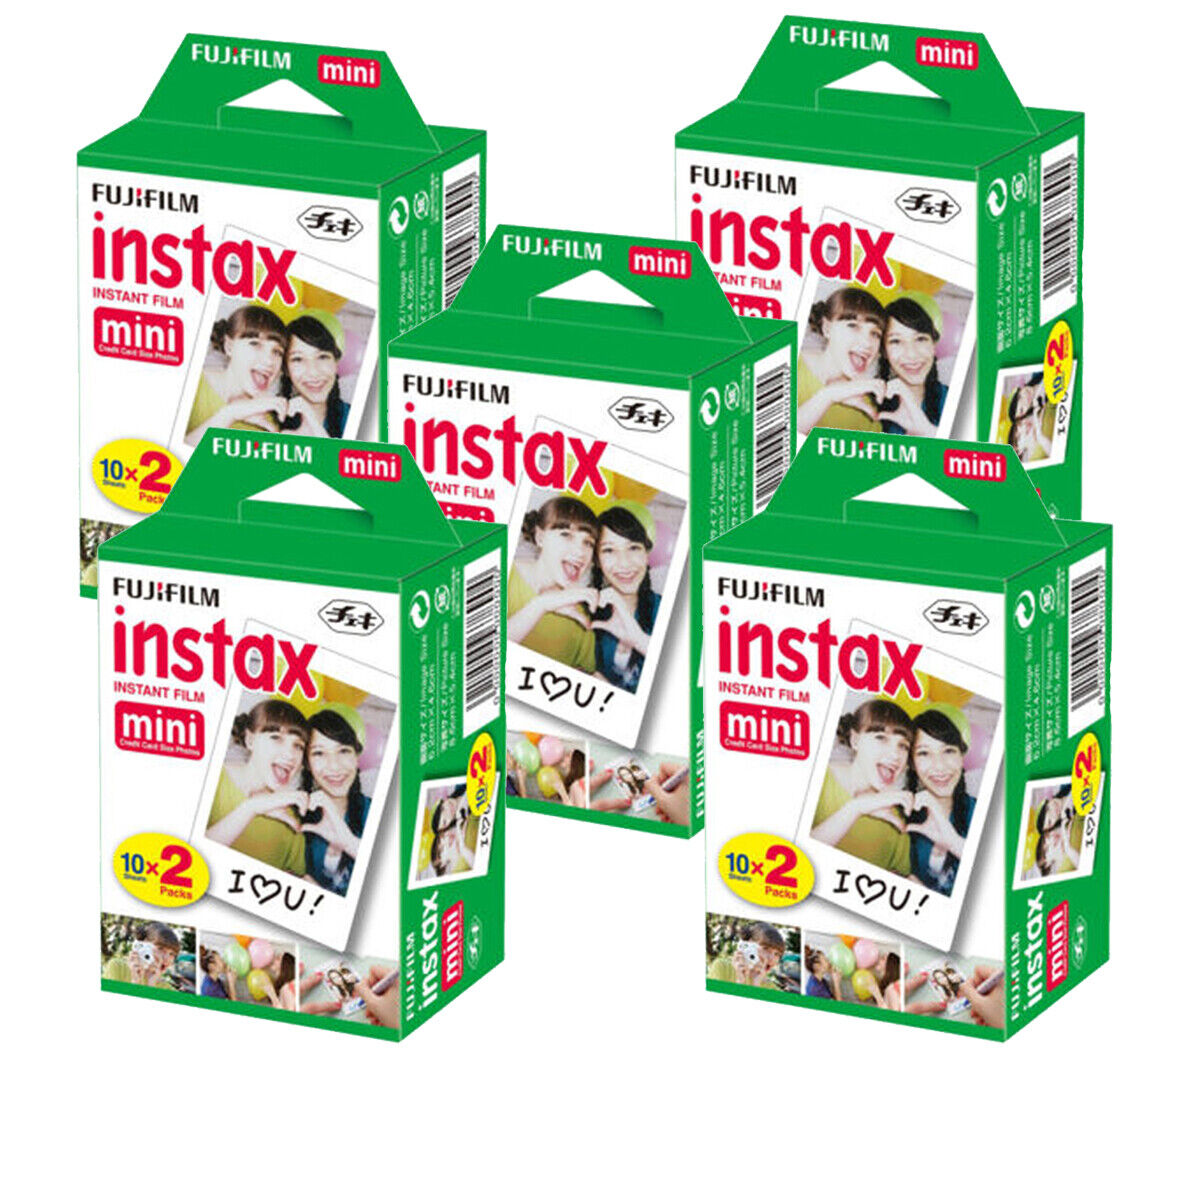 20-40-50-60 & 100 Prints Fujifilm instax instant film For Fuji mini 8 & 9 Camera Fujifilm Instax Mini - фотография #3